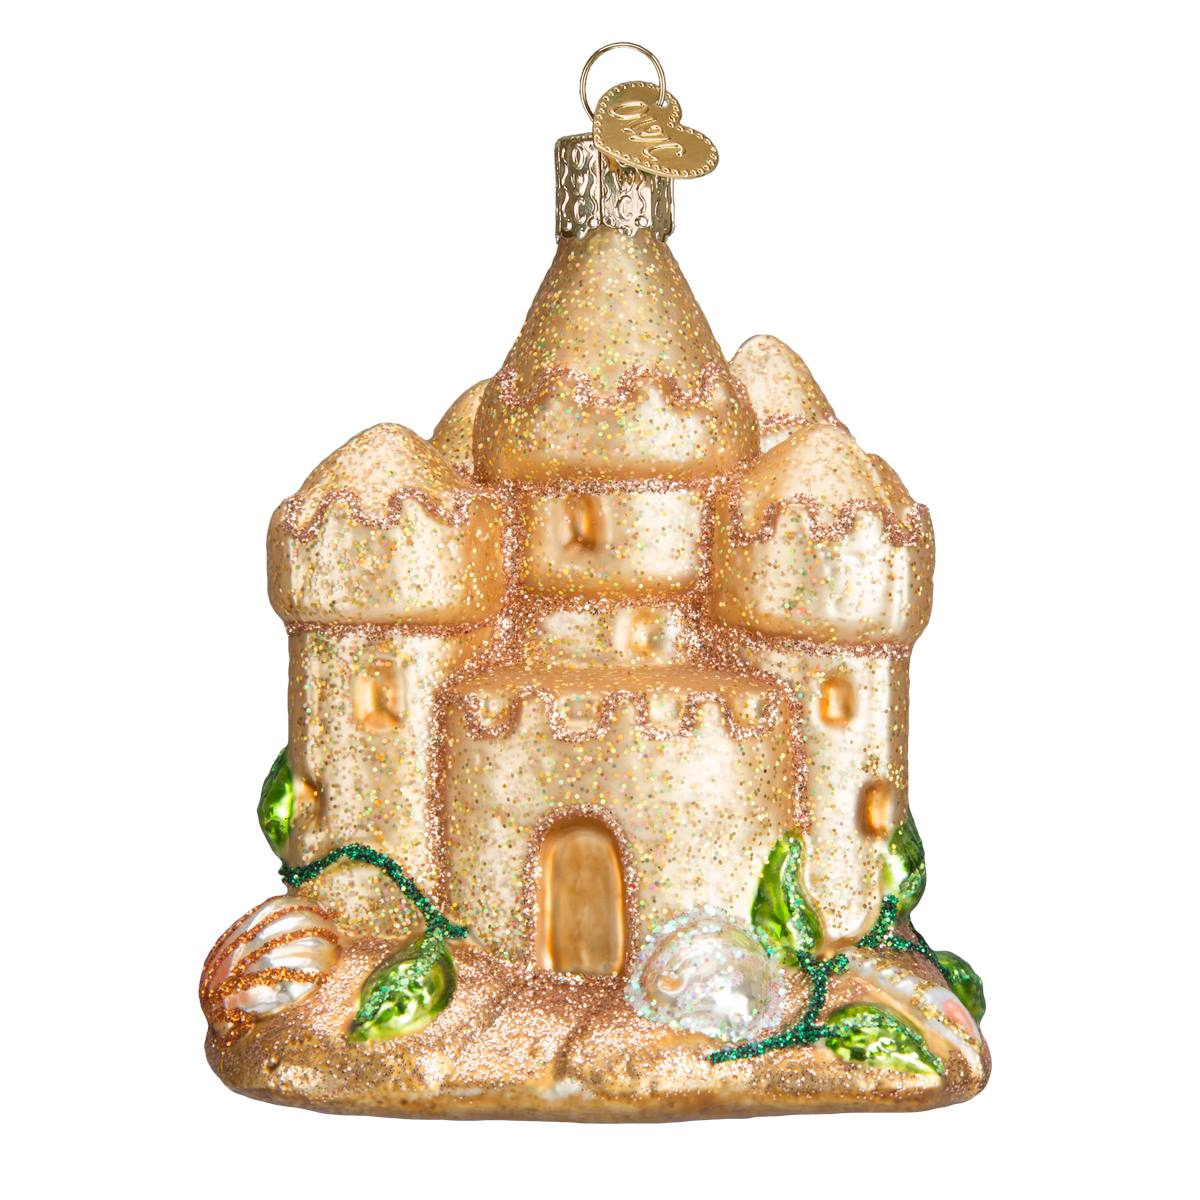 Sand Castle Ornament